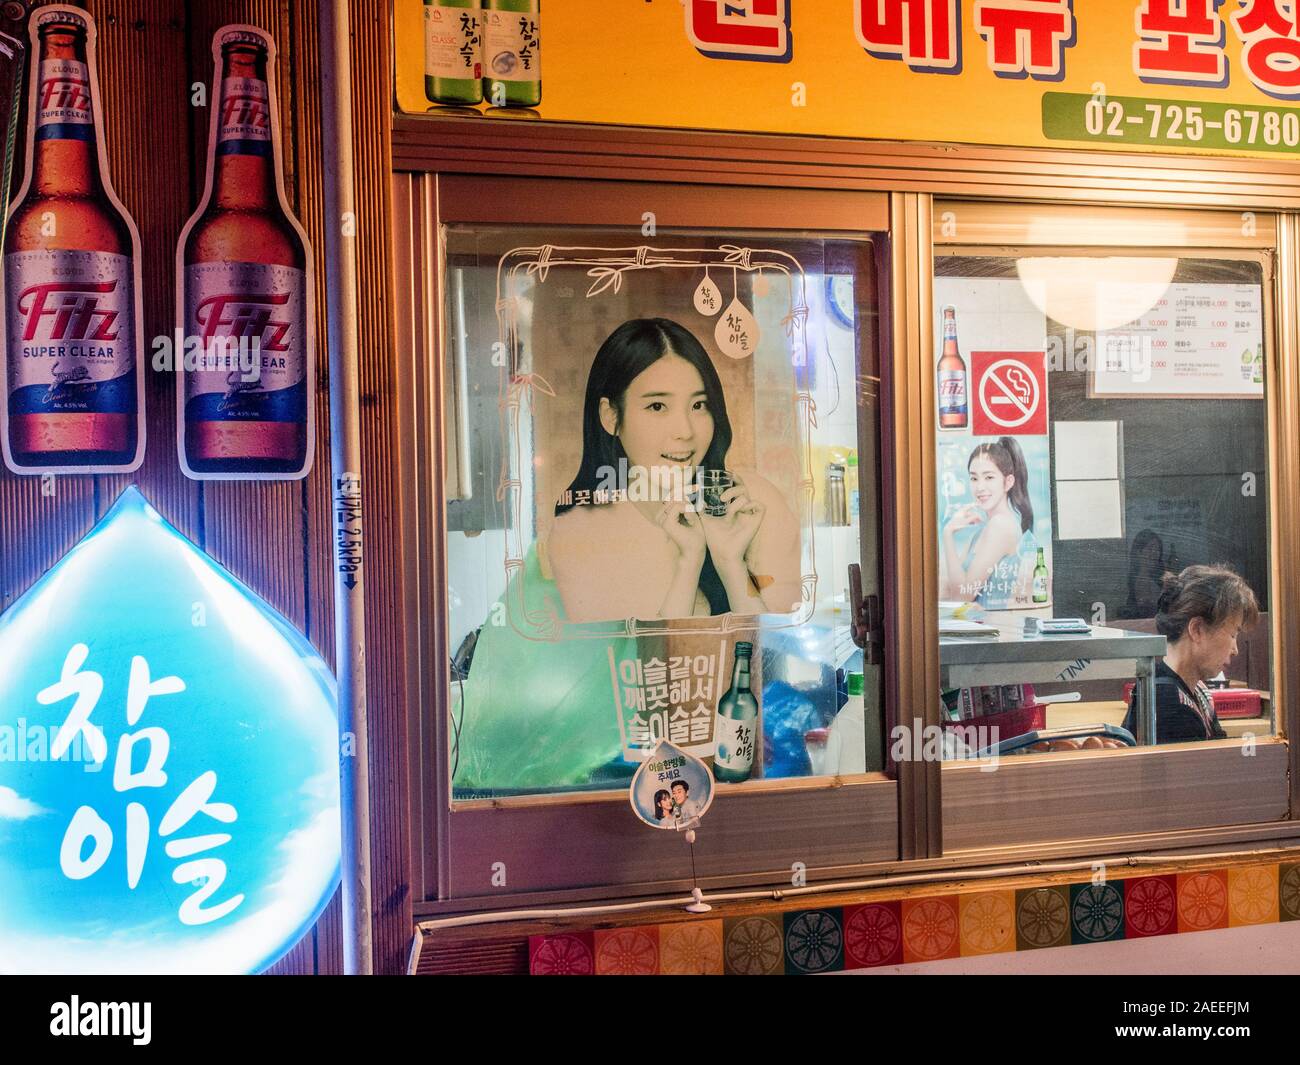 Restaurante ventana, alcohol anuncios de licor con mujeres jóvenes, trabajadora dormido en su interior, la calle de noche, Gyeongbokgung, Seúl, Corea del Sur Foto de stock